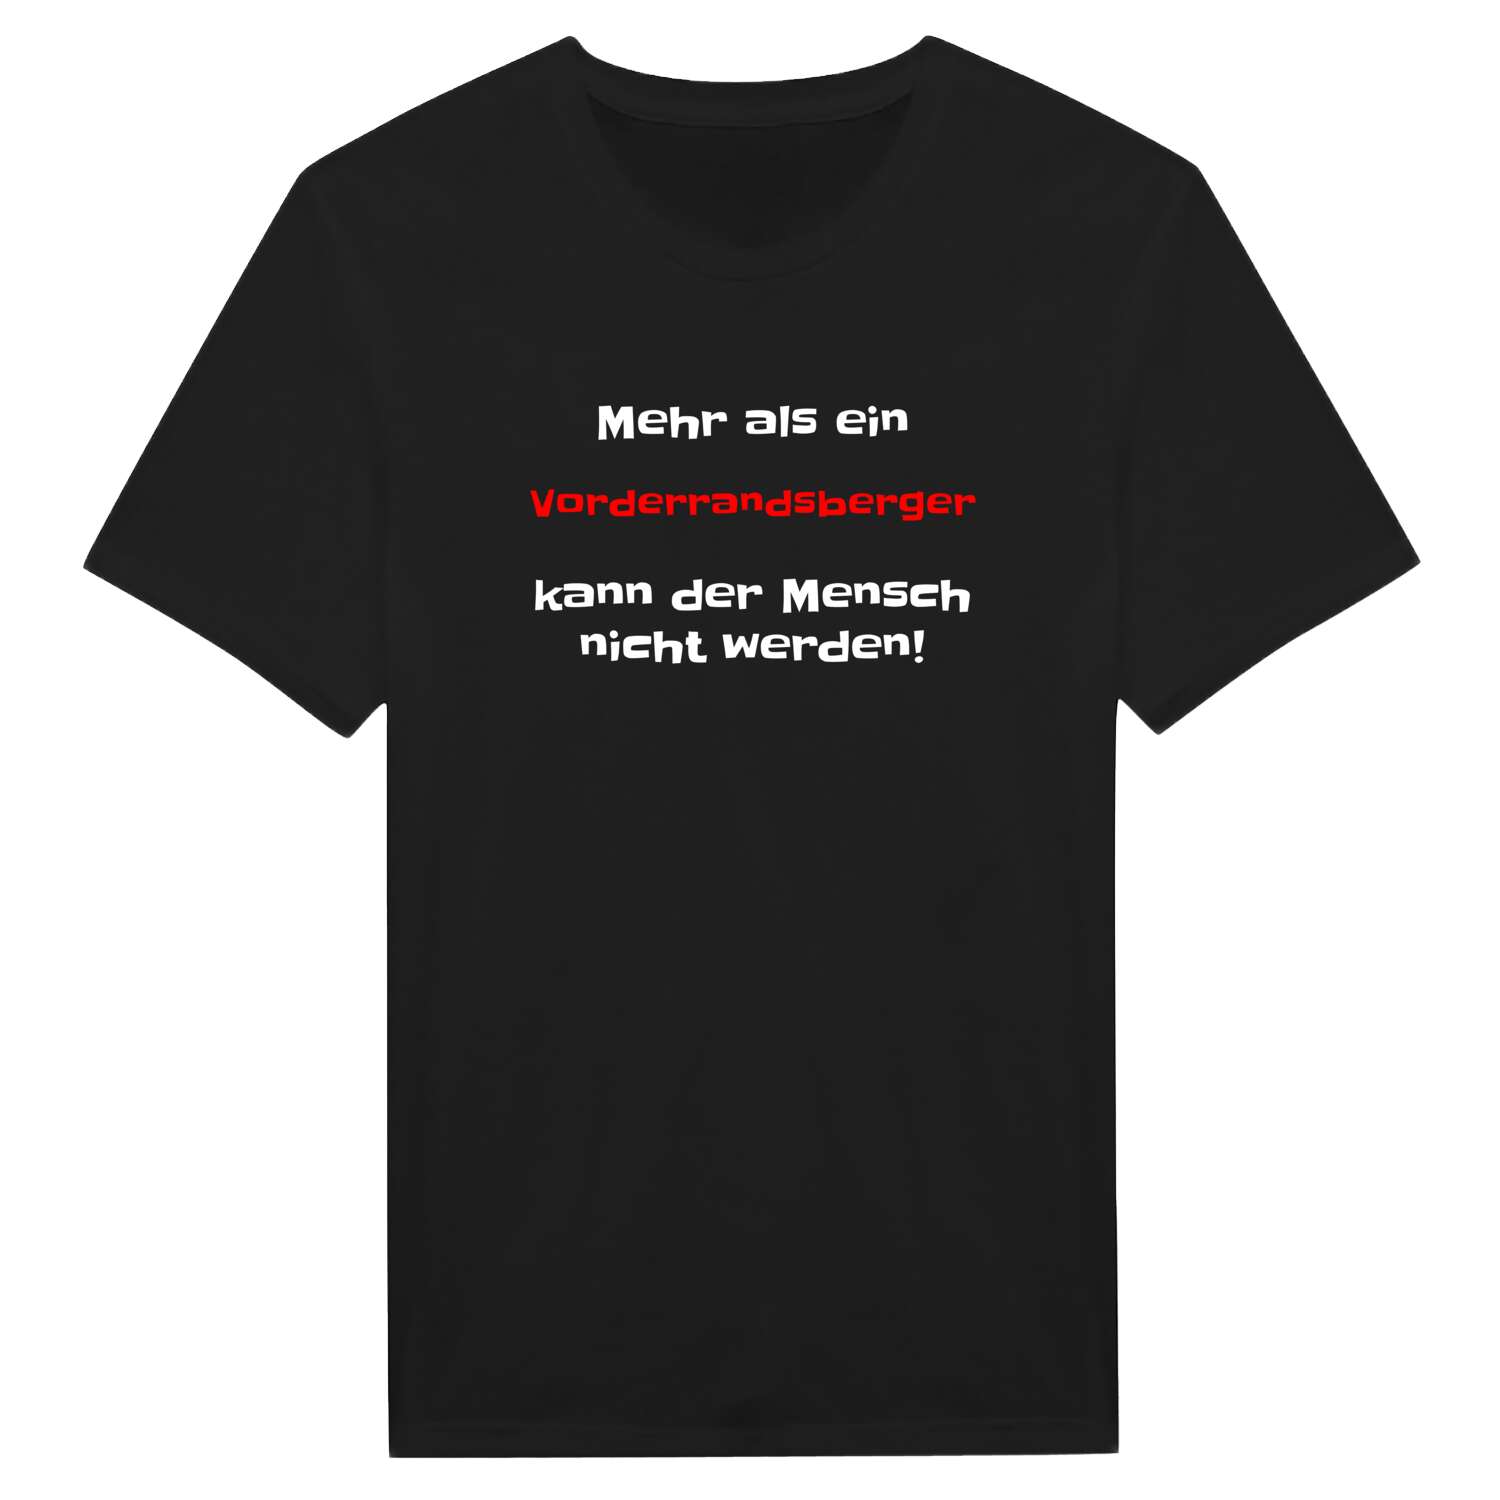 Vorderrandsberg T-Shirt »Mehr als ein«